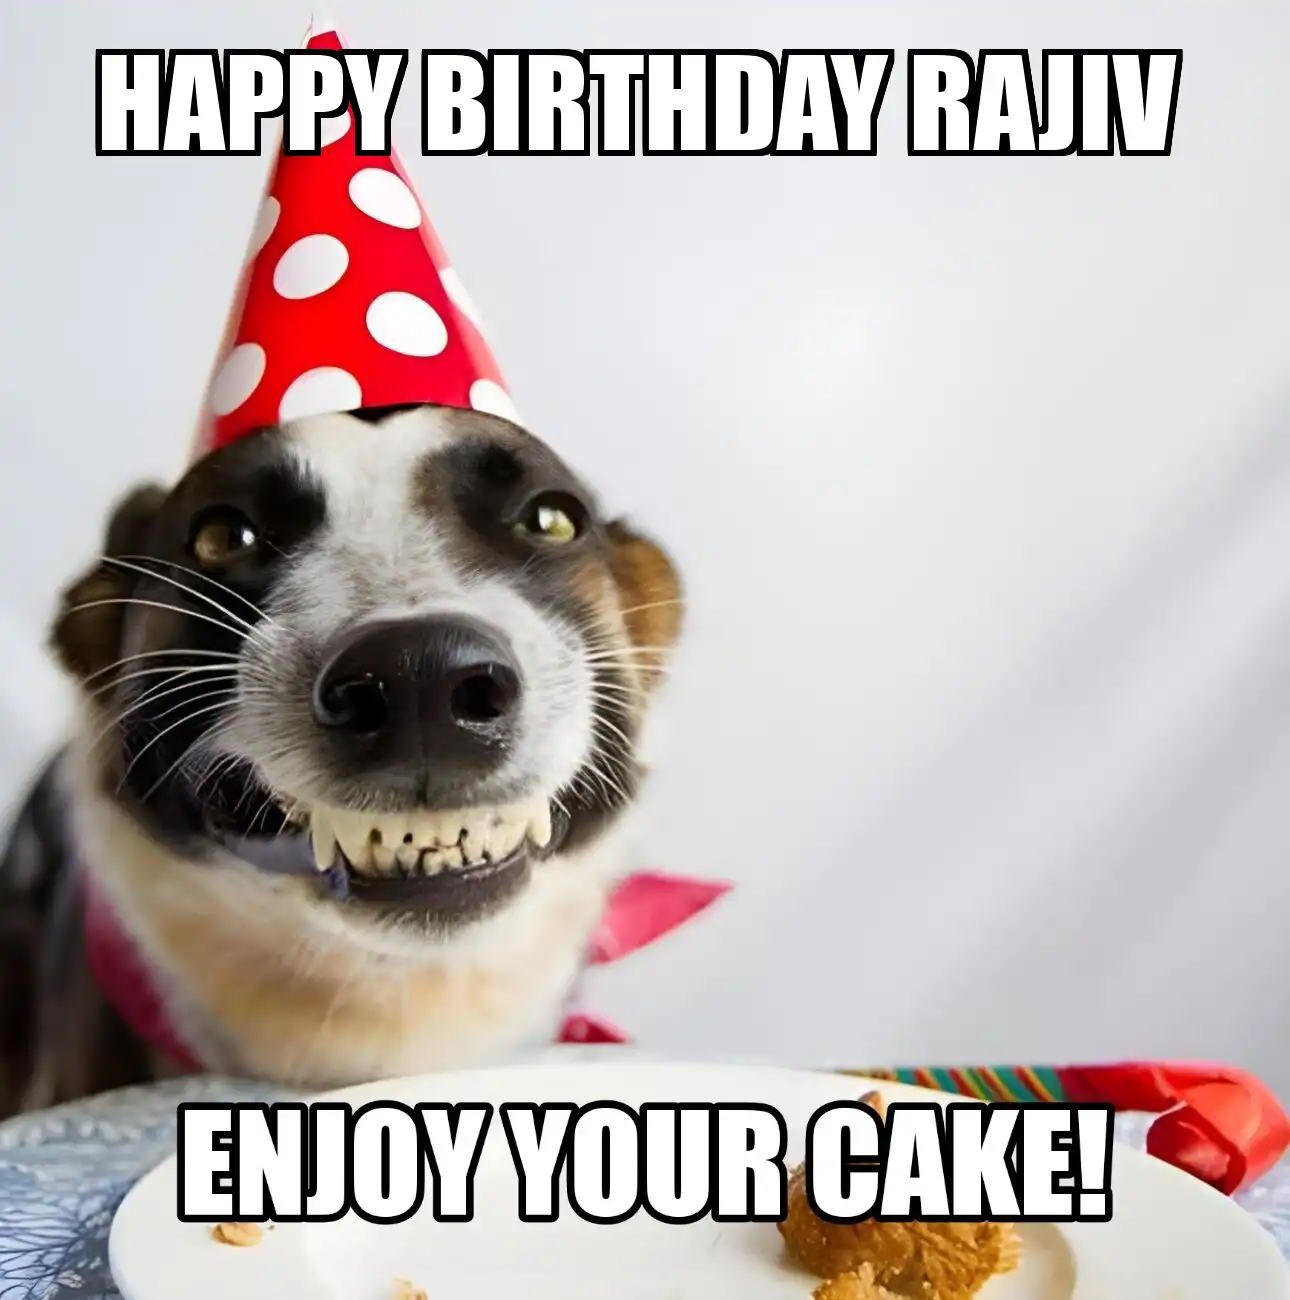 Happy Birthday Rajiv Enjoy Your Cake Dog Meme